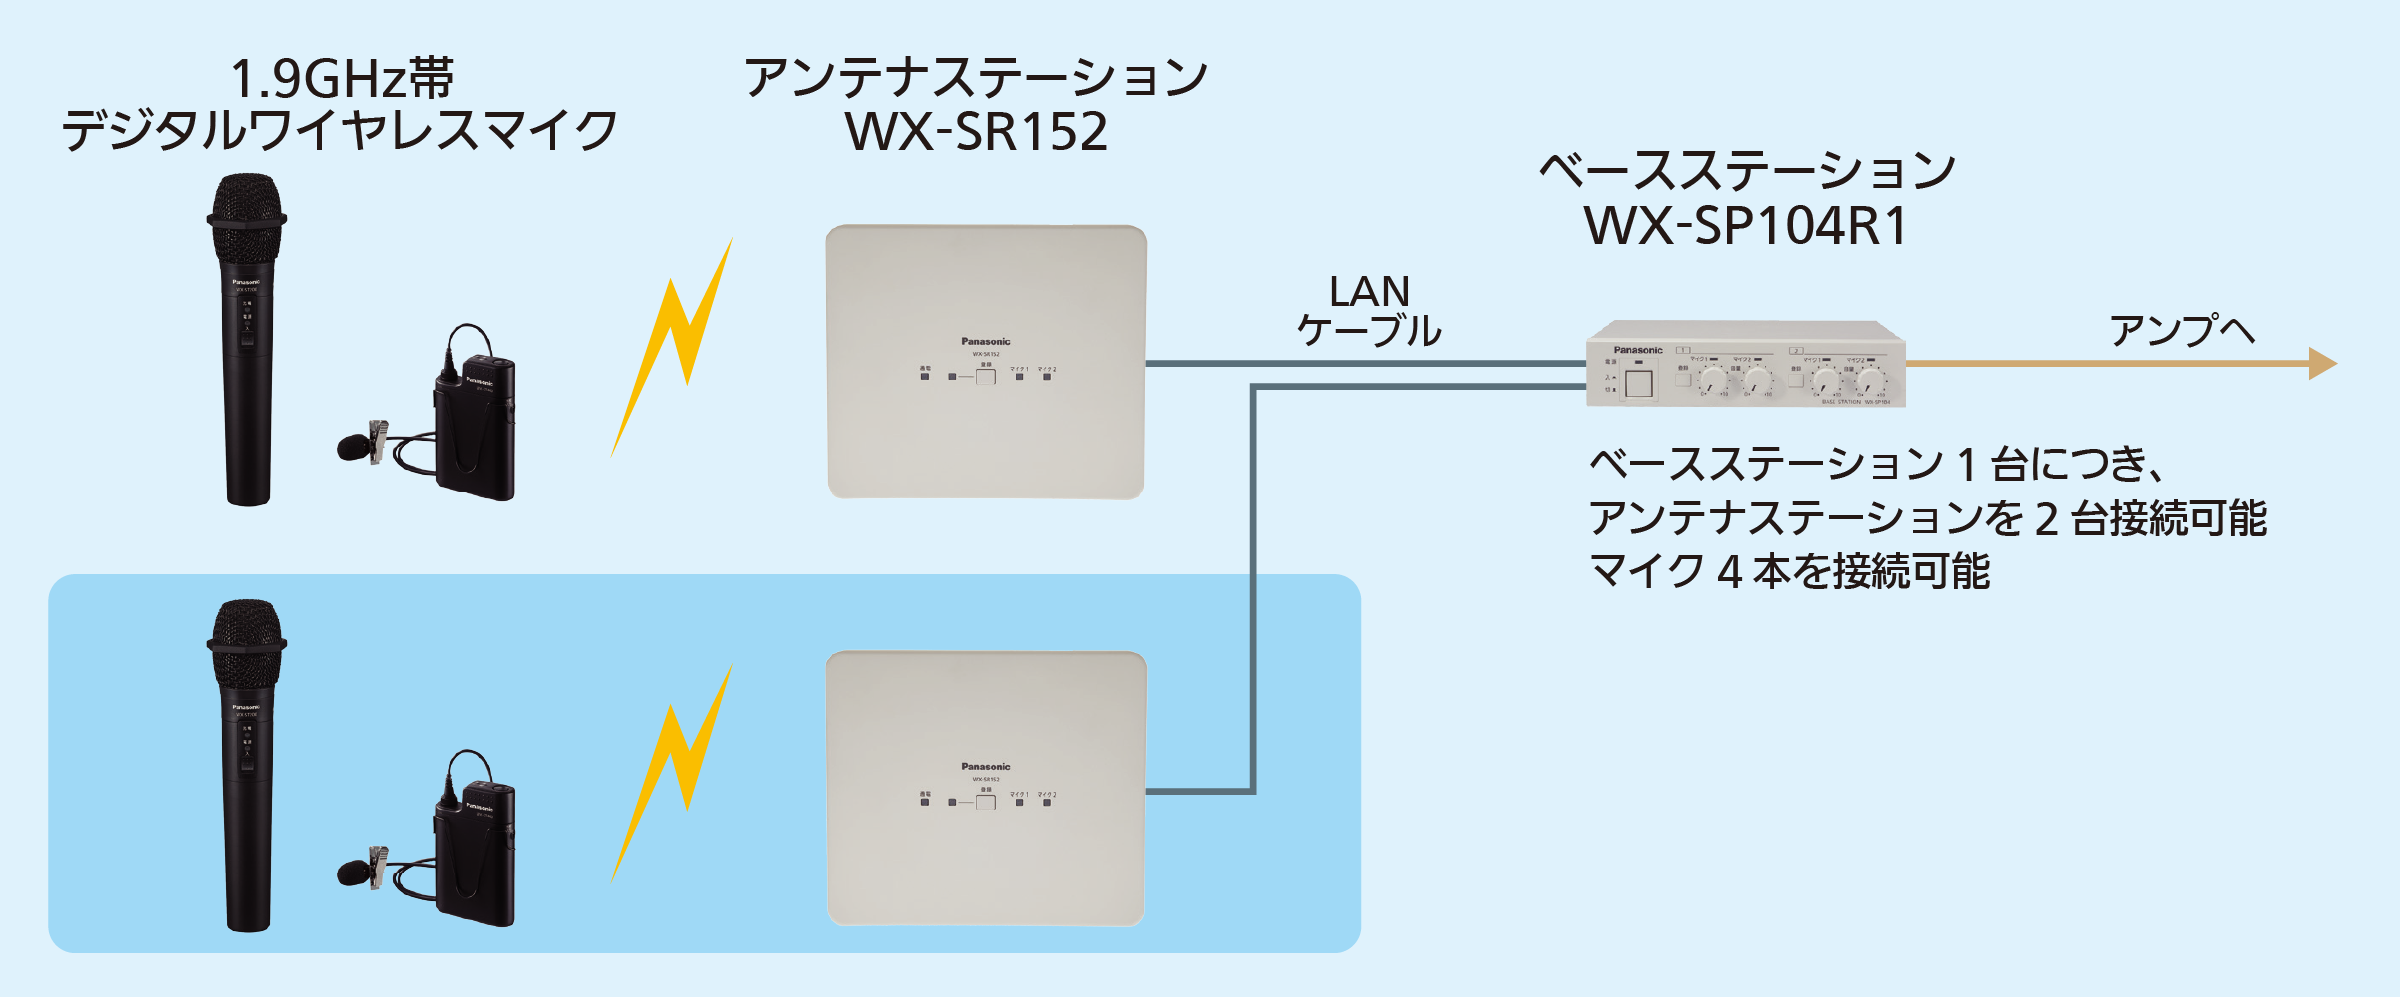 WX-SR152 システム構成例